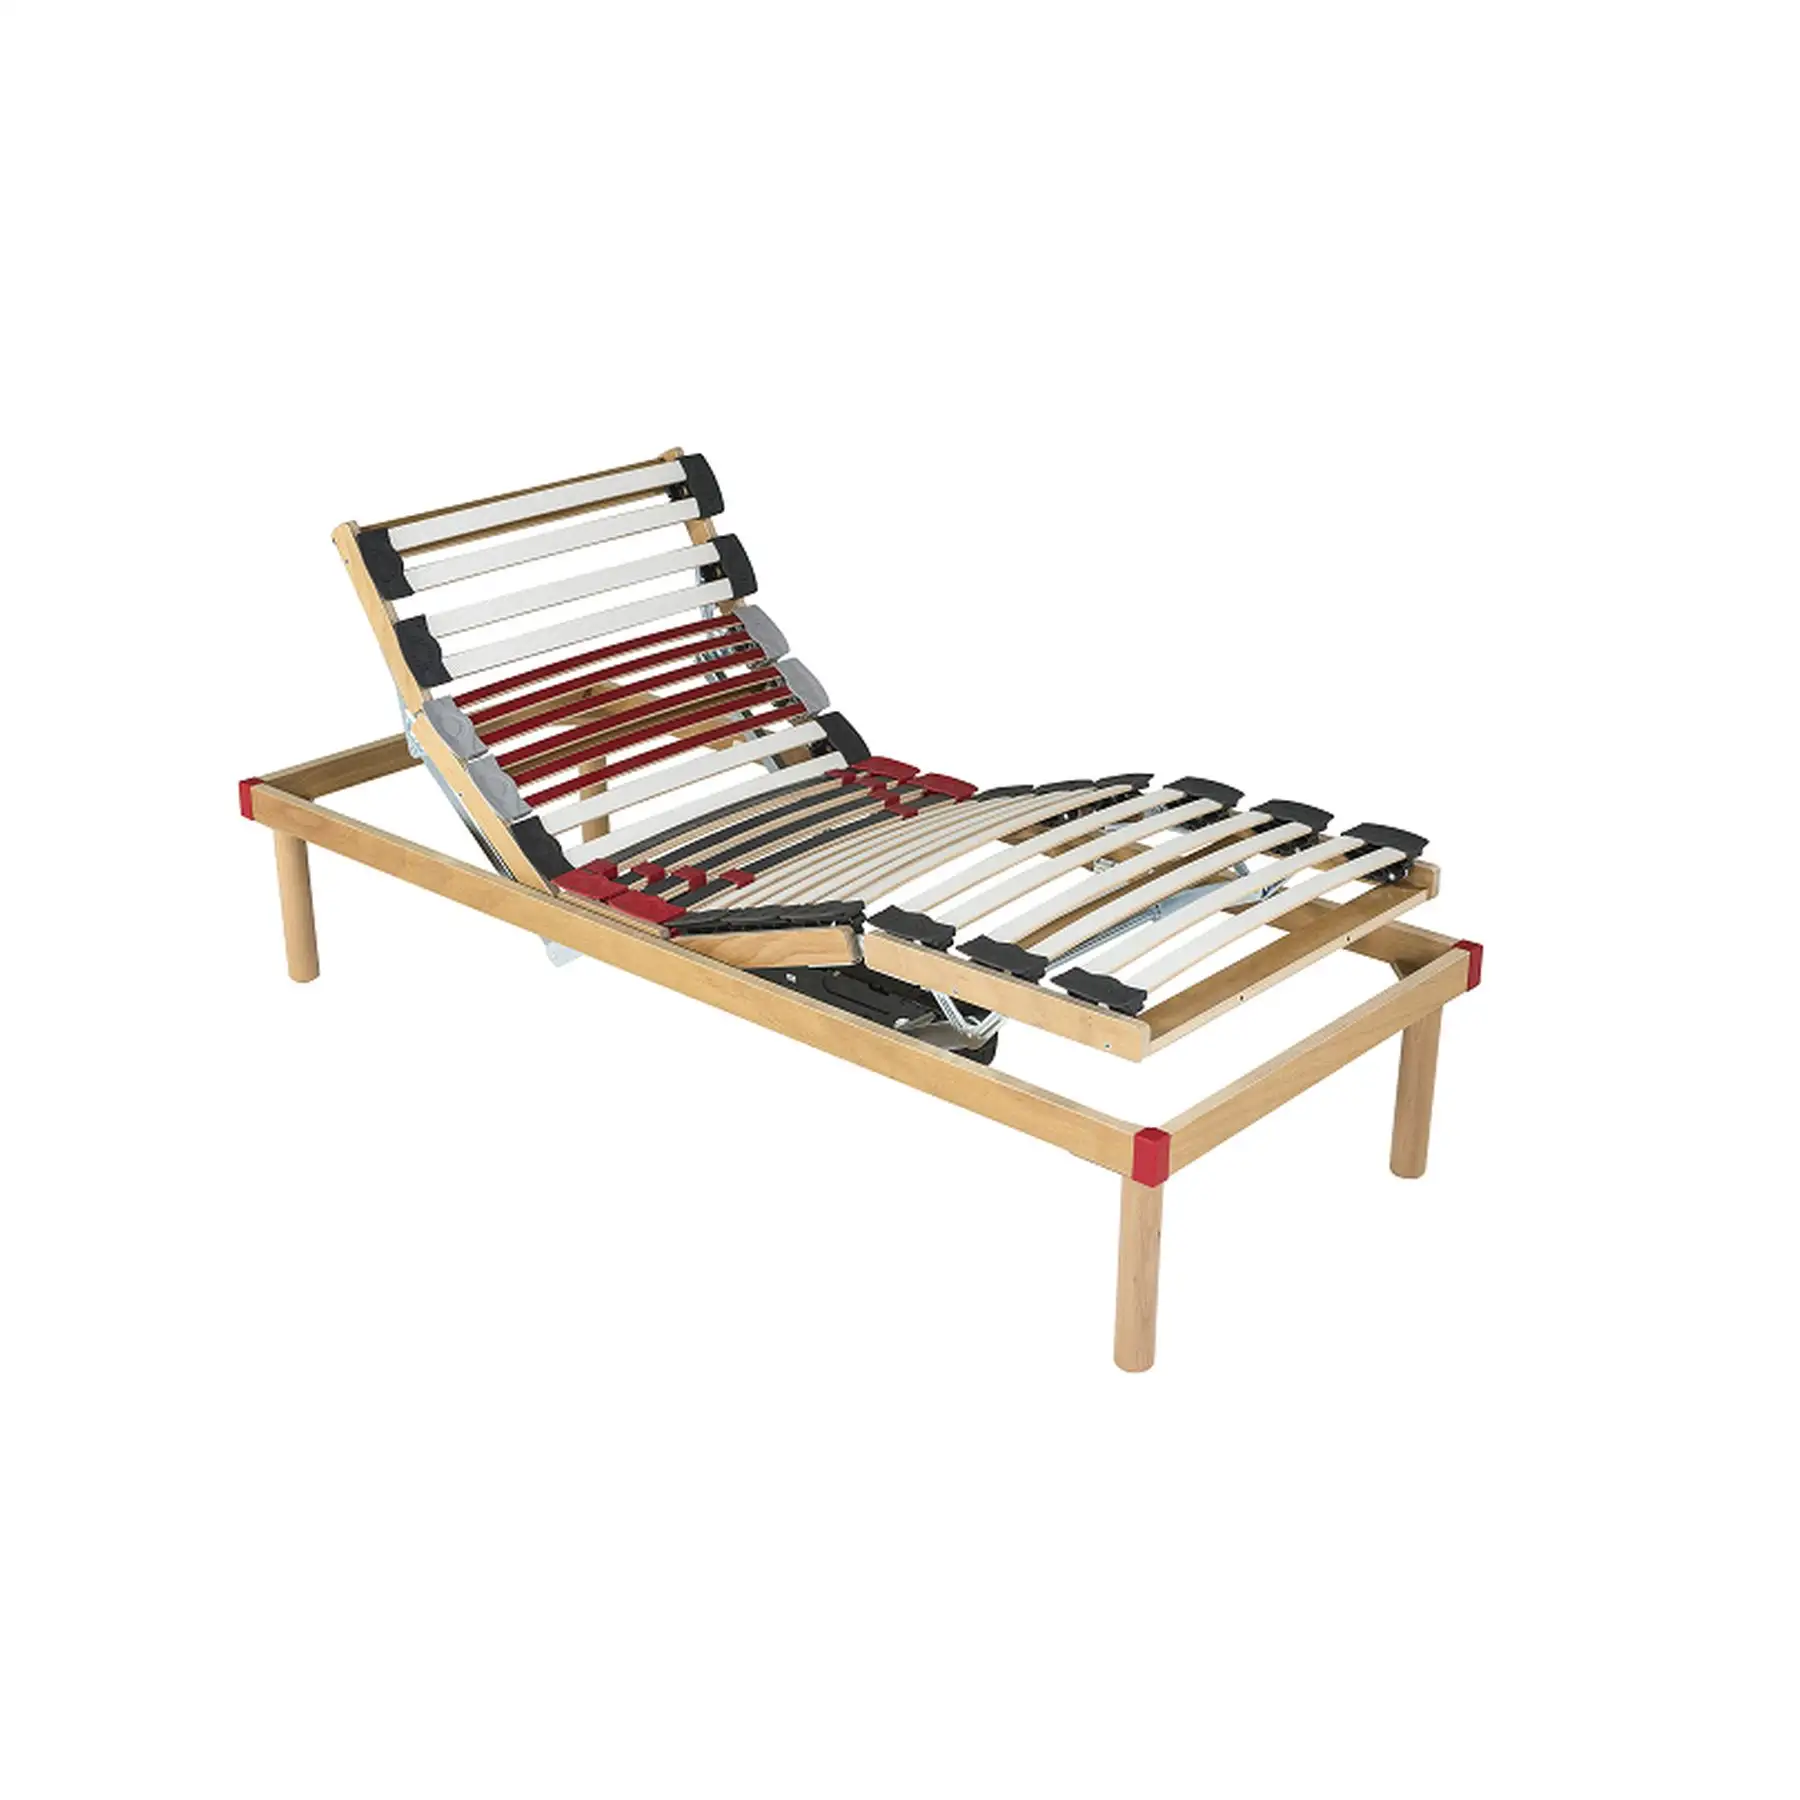 Tradición e innovación en camas de madera italianas artesanales-Cama fija-Ajuste para comodidad tradicional